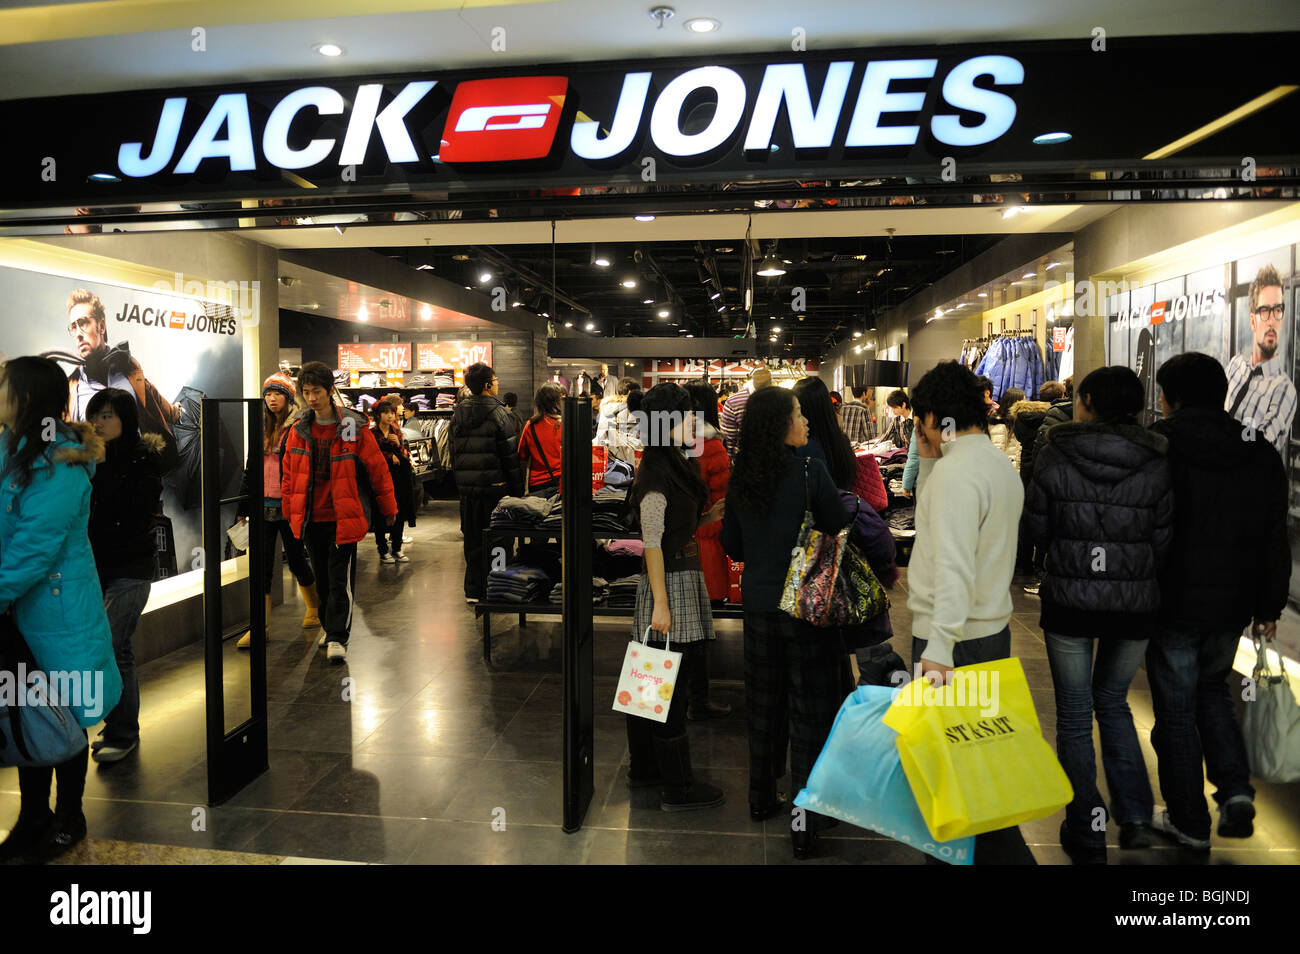 Jack & Jones shop in Dayuecheng shopping mall, Beijing, China Stock Photo -  Alamy